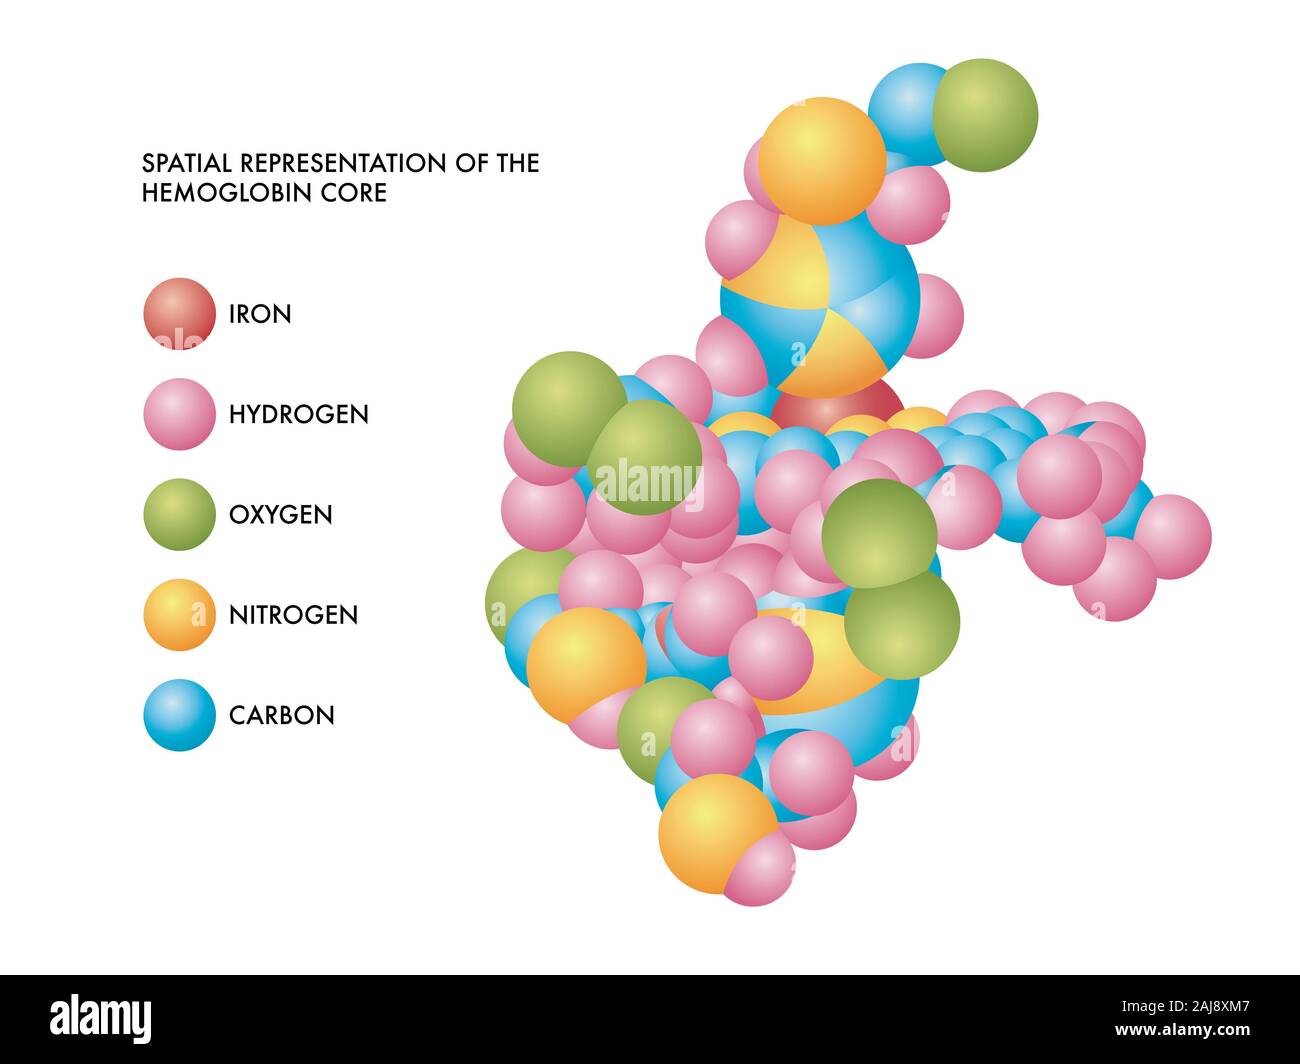 Illustrazione medica di emoglobina core rappresentazione spaziale con molecole di ferro, idrogeno, ossigeno, azoto e carbonio in codificati a colori forme. Foto Stock